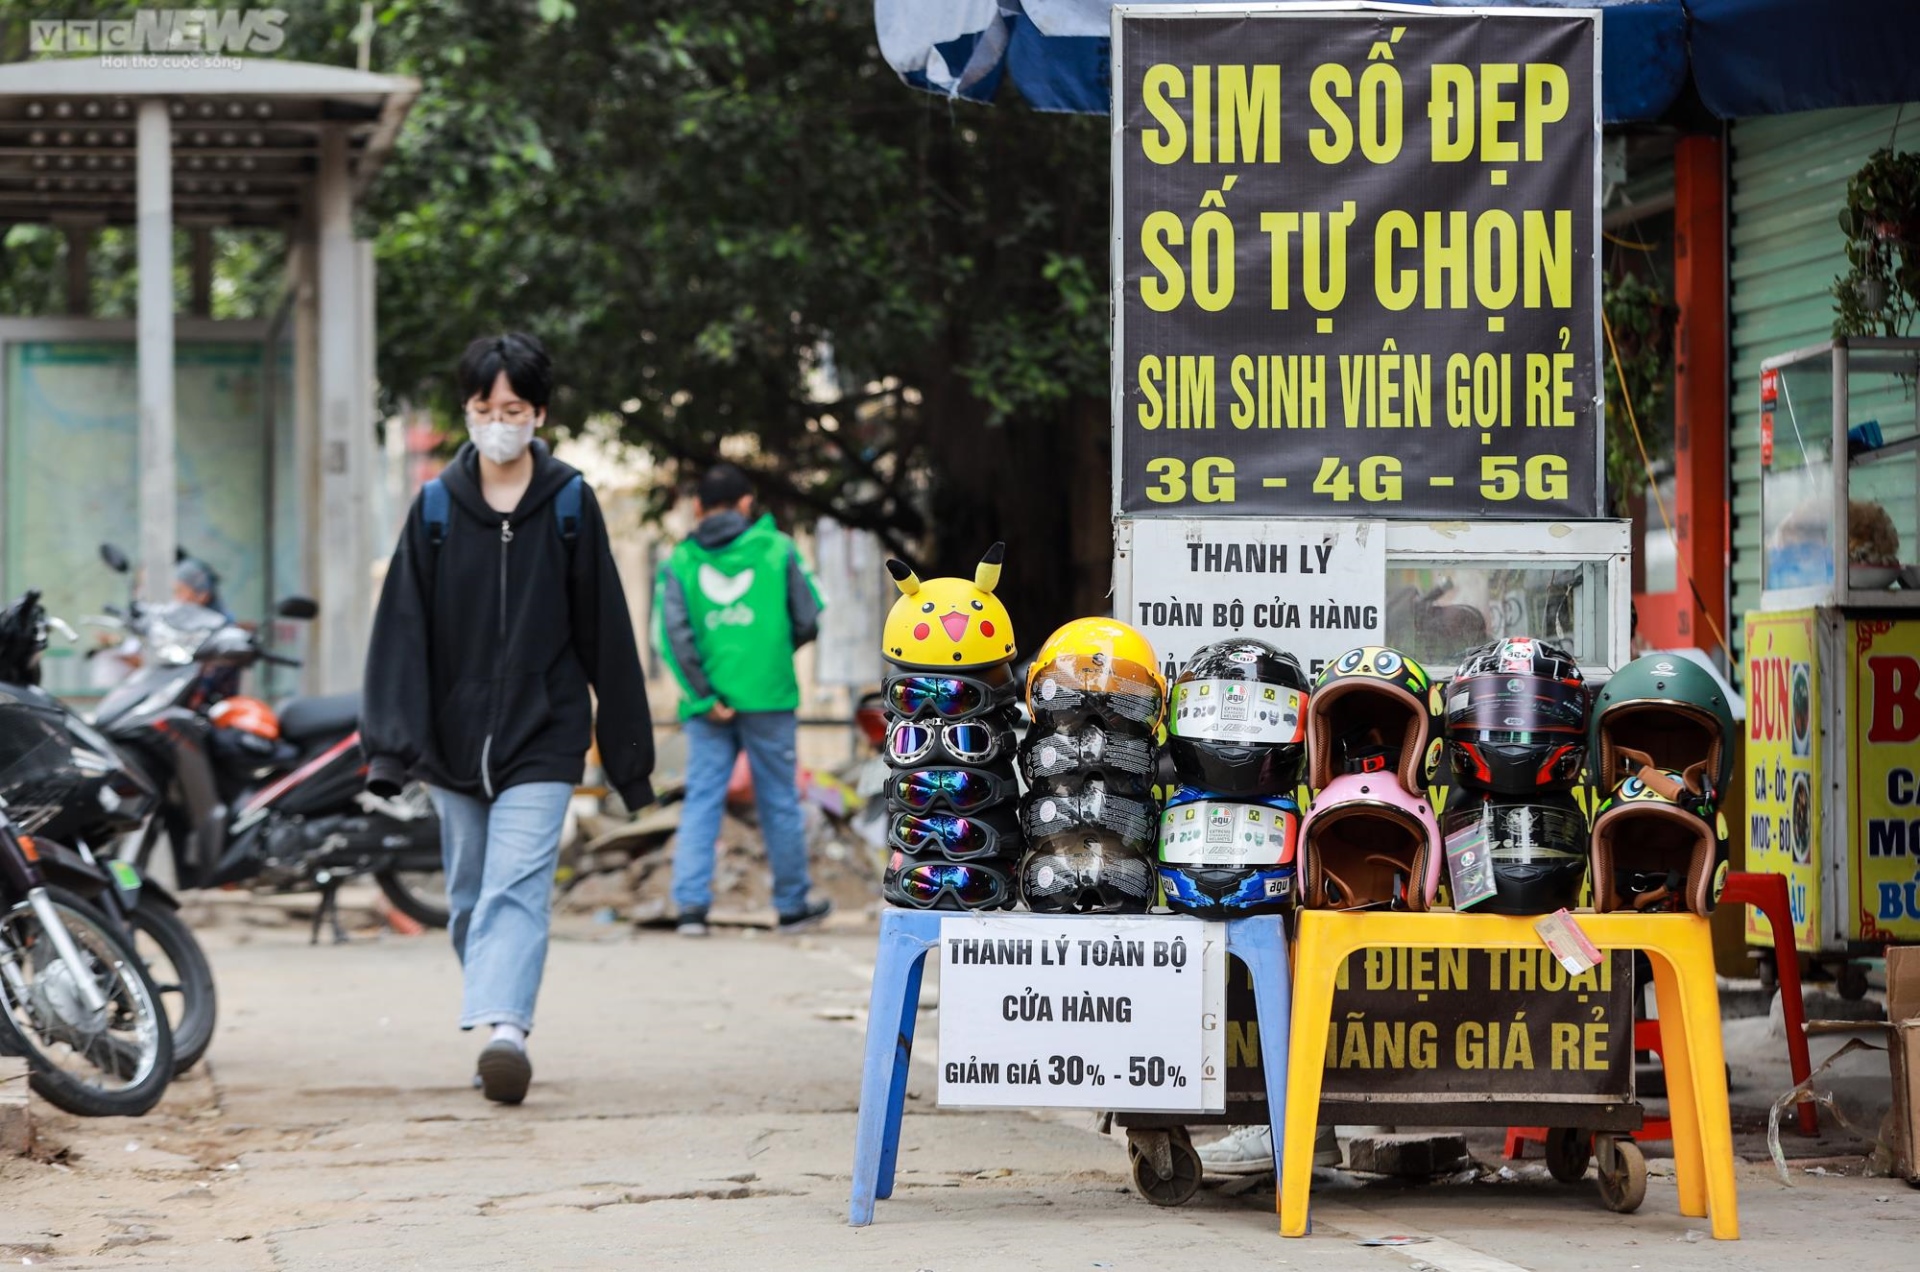 Muôn kiểu 'cướp' vỉa hè ở Hà Nội, đẩy người đi bộ xuống lòng đường - 12